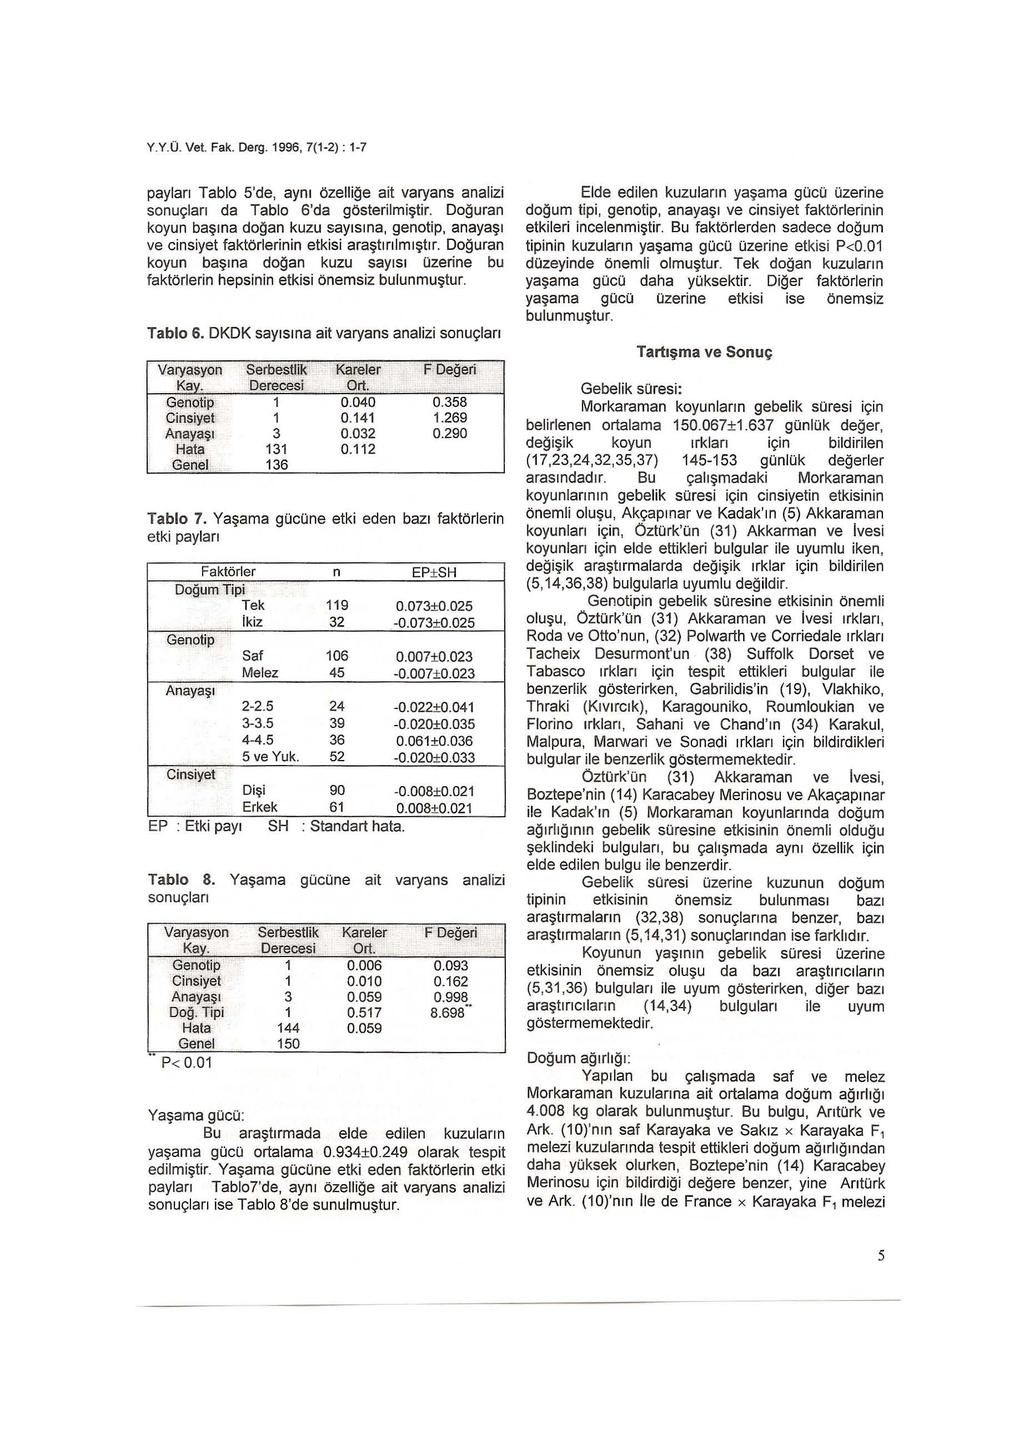 Y.Y.O. Vet. fak. Derg. 1996, 7(1-2): 1-7 payları Tablo S'de, aynı öze lli ğe ait varyans analizi sonuç l arı da Tablo 6'da gösteri lmi ştir.